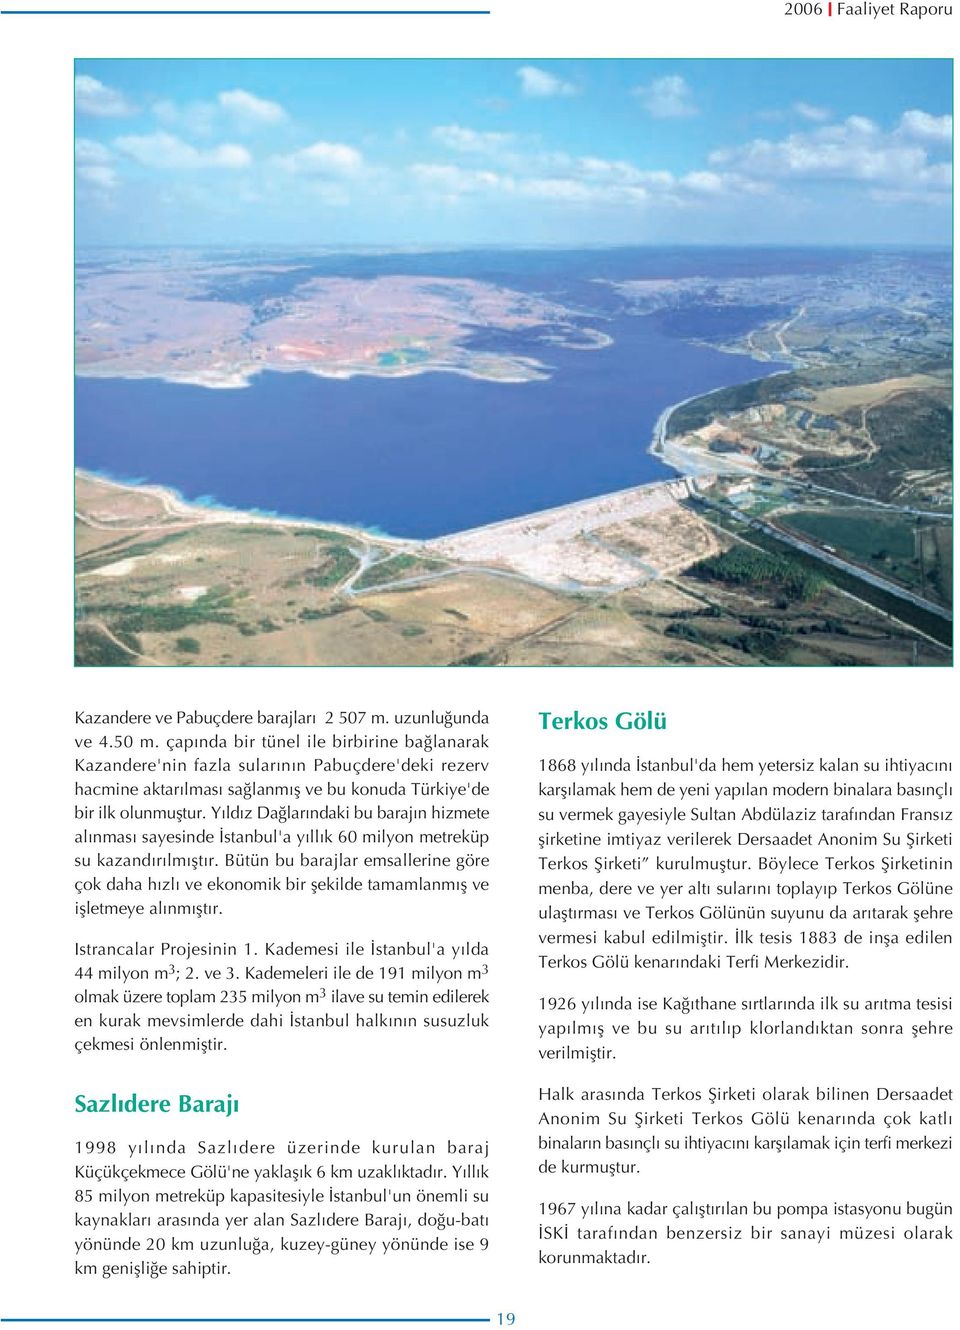 Yıldız Dağlarındaki bu barajın hizmete alınması sayesinde İstanbul'a yıllık 6 milyon metreküp su kazandırılmıştır.